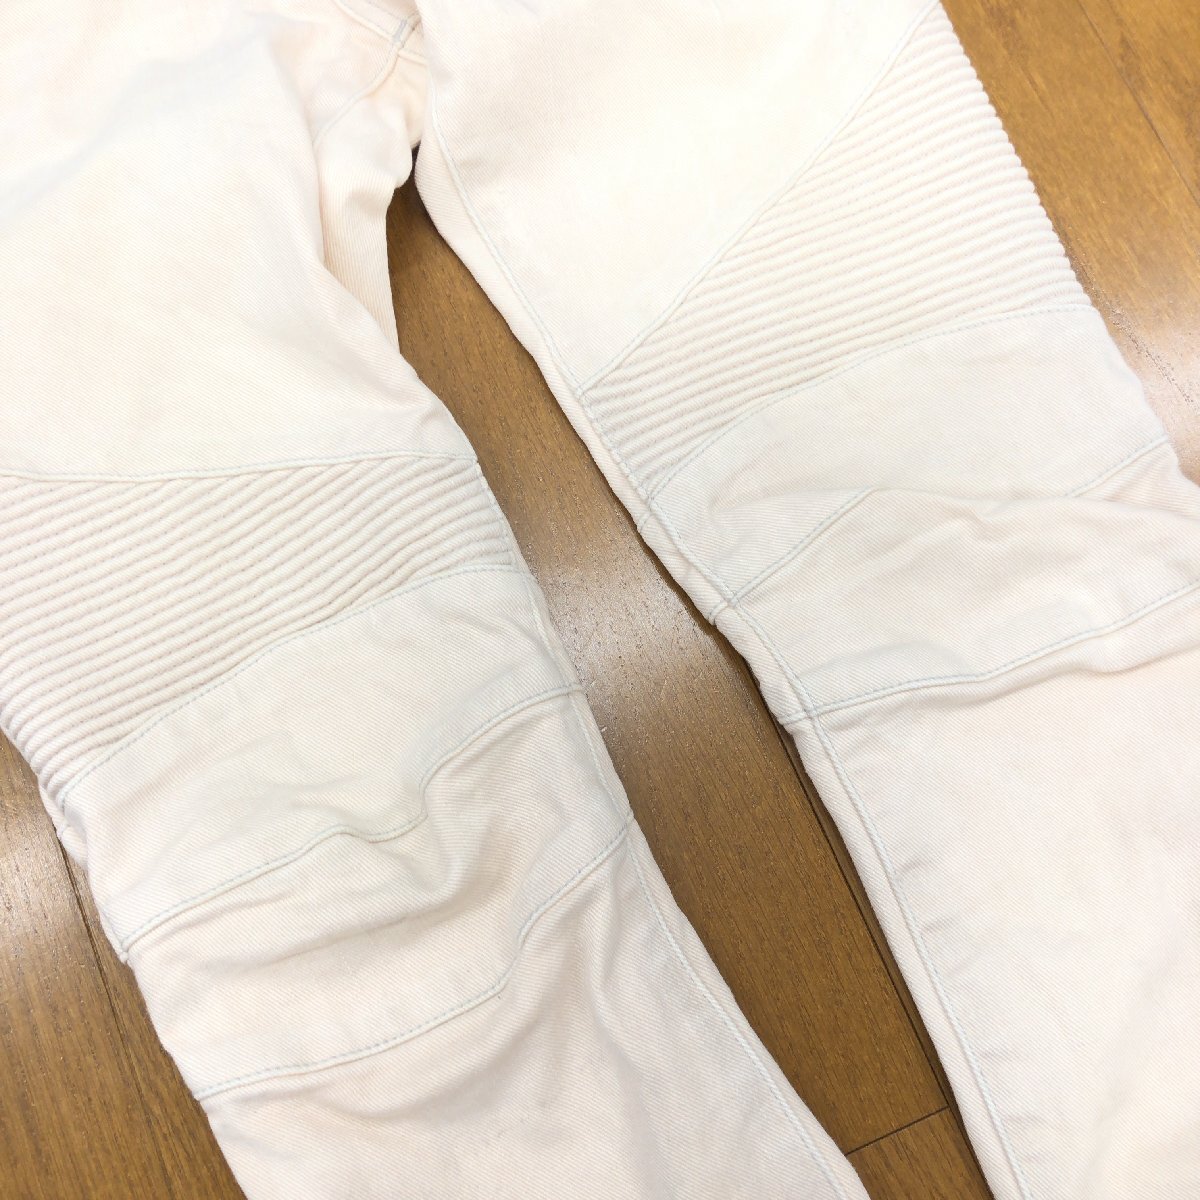 *BALMAIN Balmain USED обработка стрейч Biker Denim брюки 27 w78 слоновая кость джинсы обтягивающий брюки сделано в Японии внутренний стандартный товар мужской 